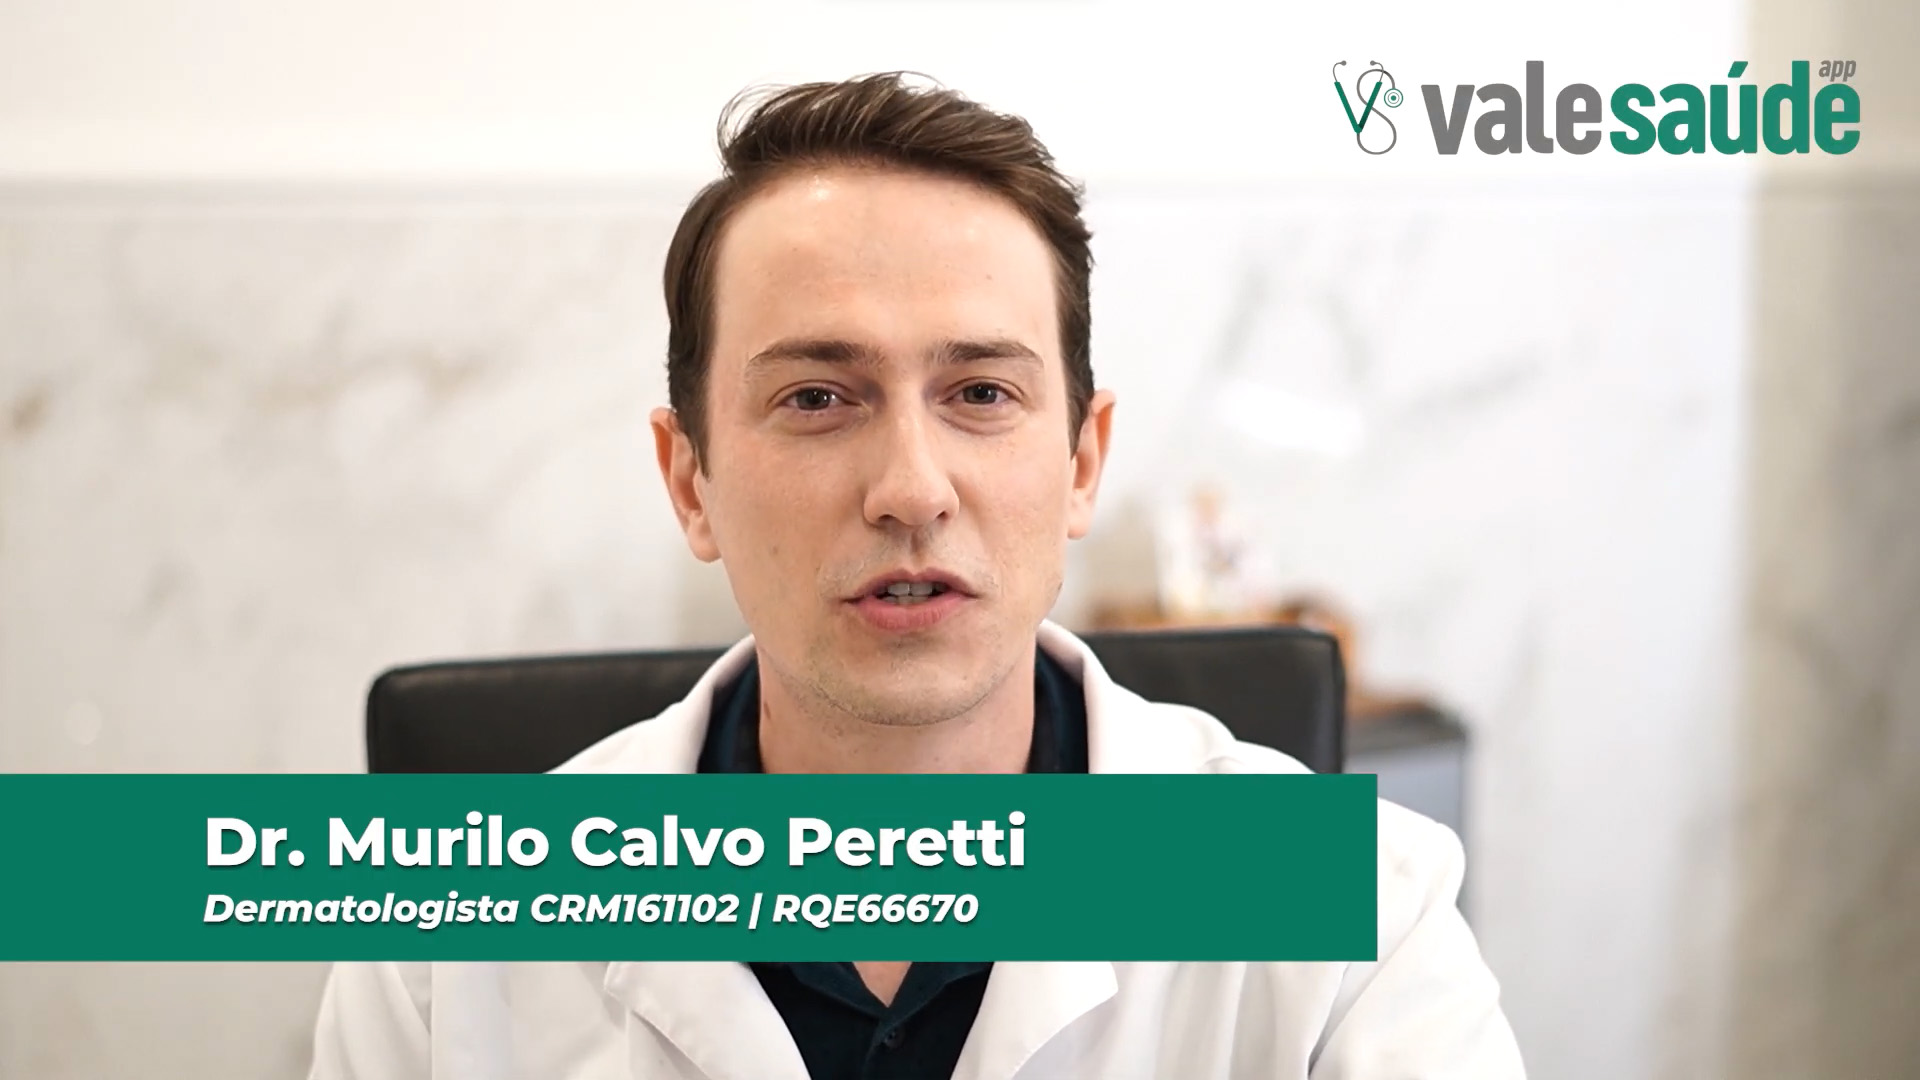 Dr. Murilo Peretti, dermatologista, explica sobre a harmonização facial